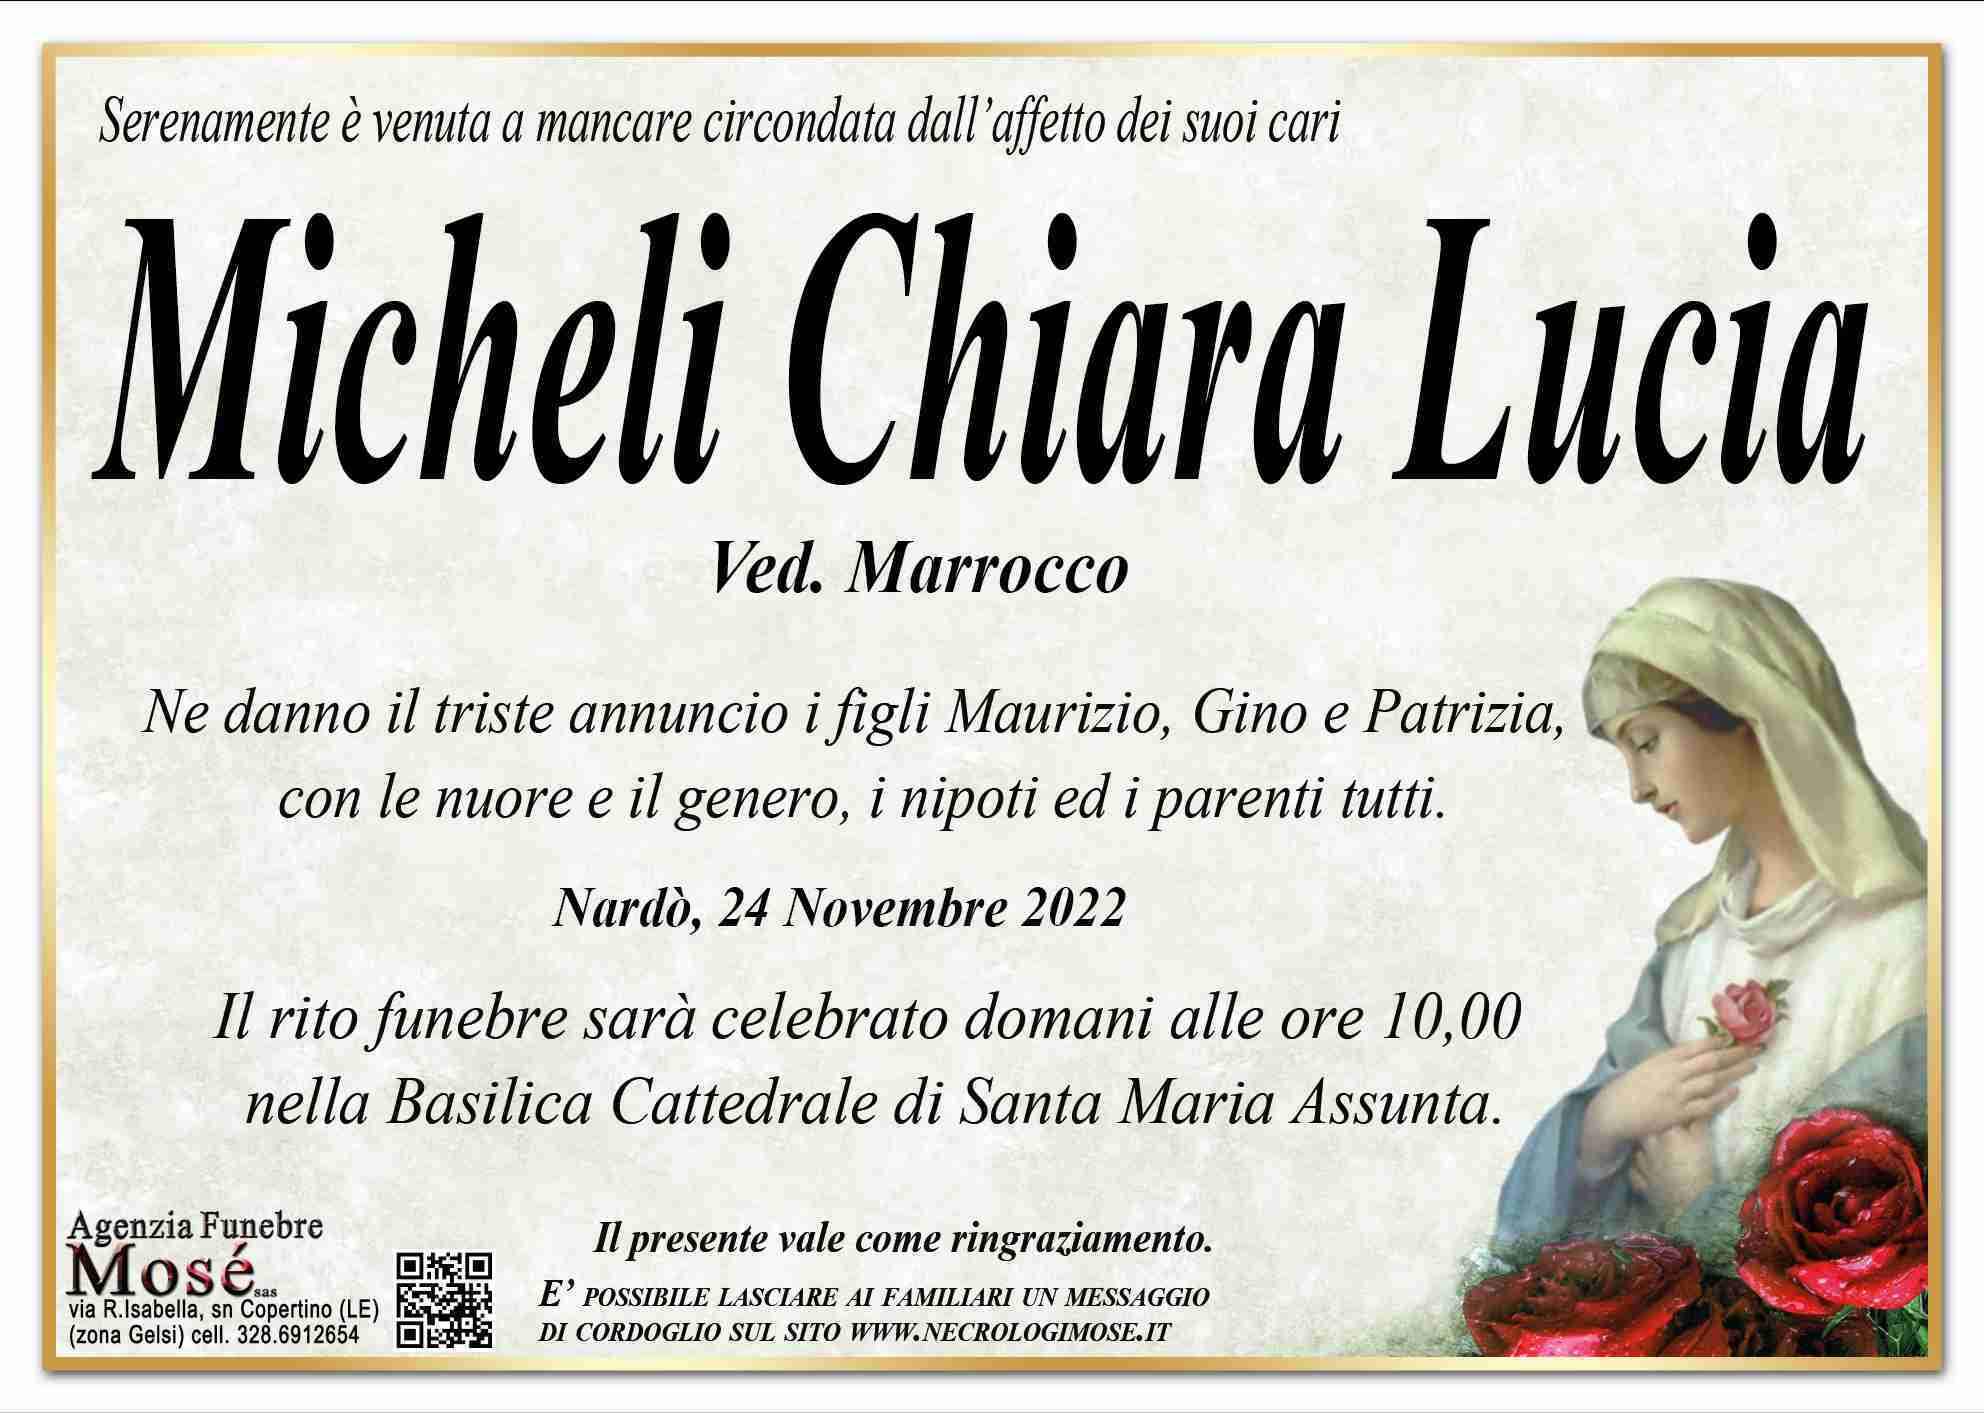 Micheli Chiara Lucia